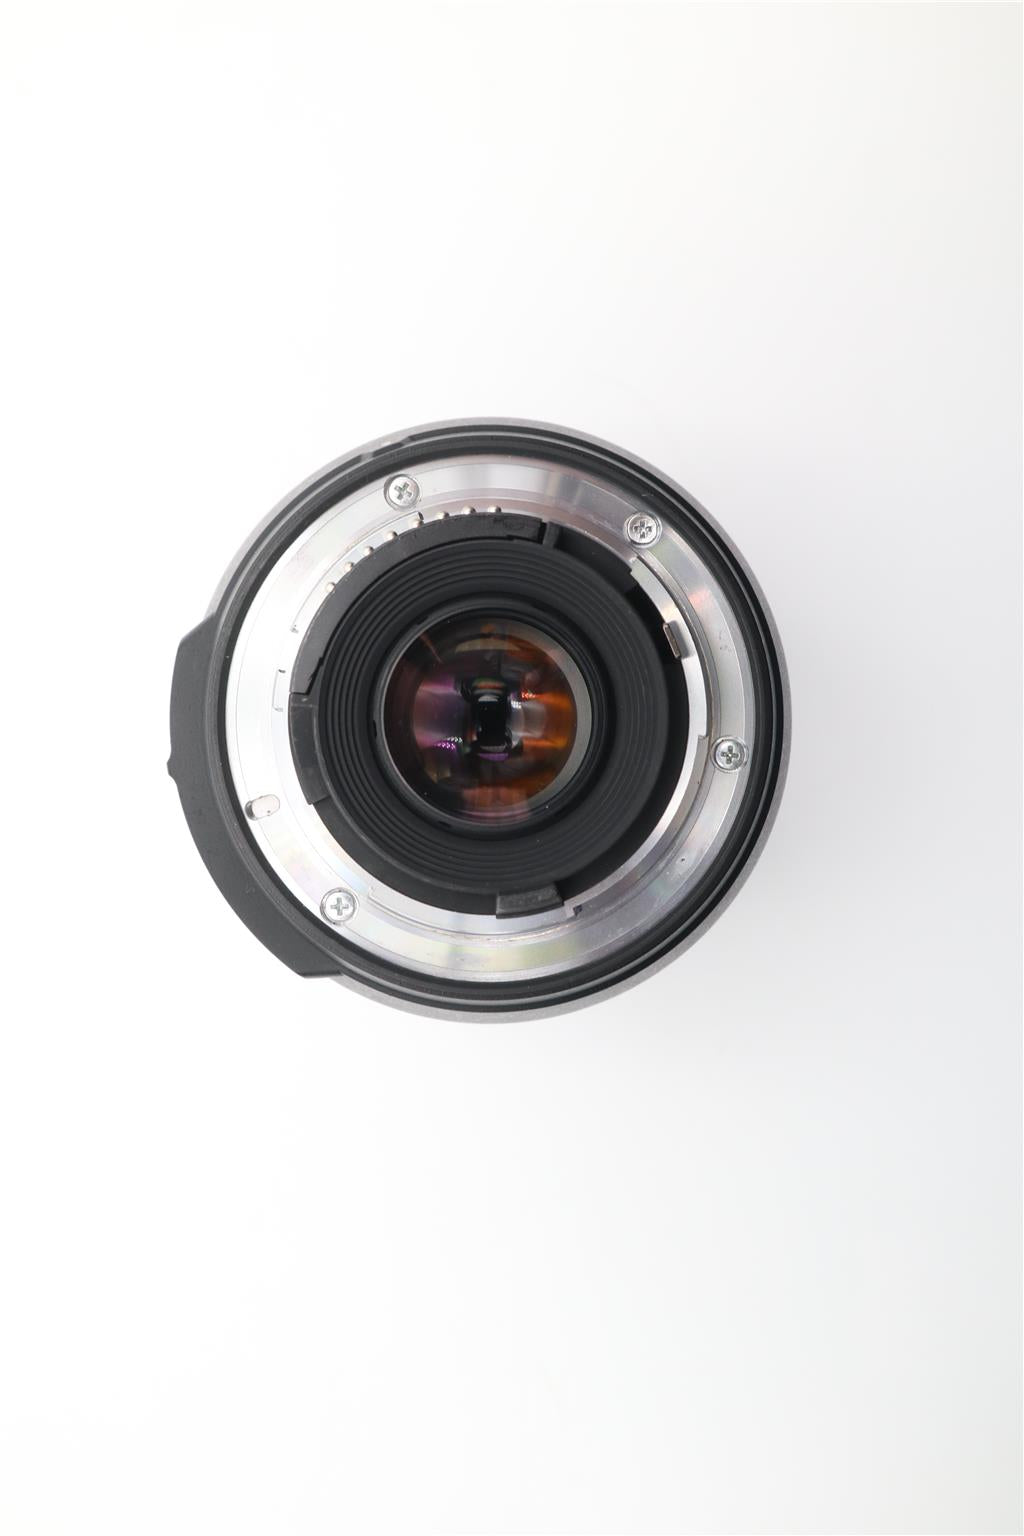 Nikon 16-85mm All-Around Lens f/3.5-5.6 G AF-S VR, Stabilised Lens, V.G. REFURB.